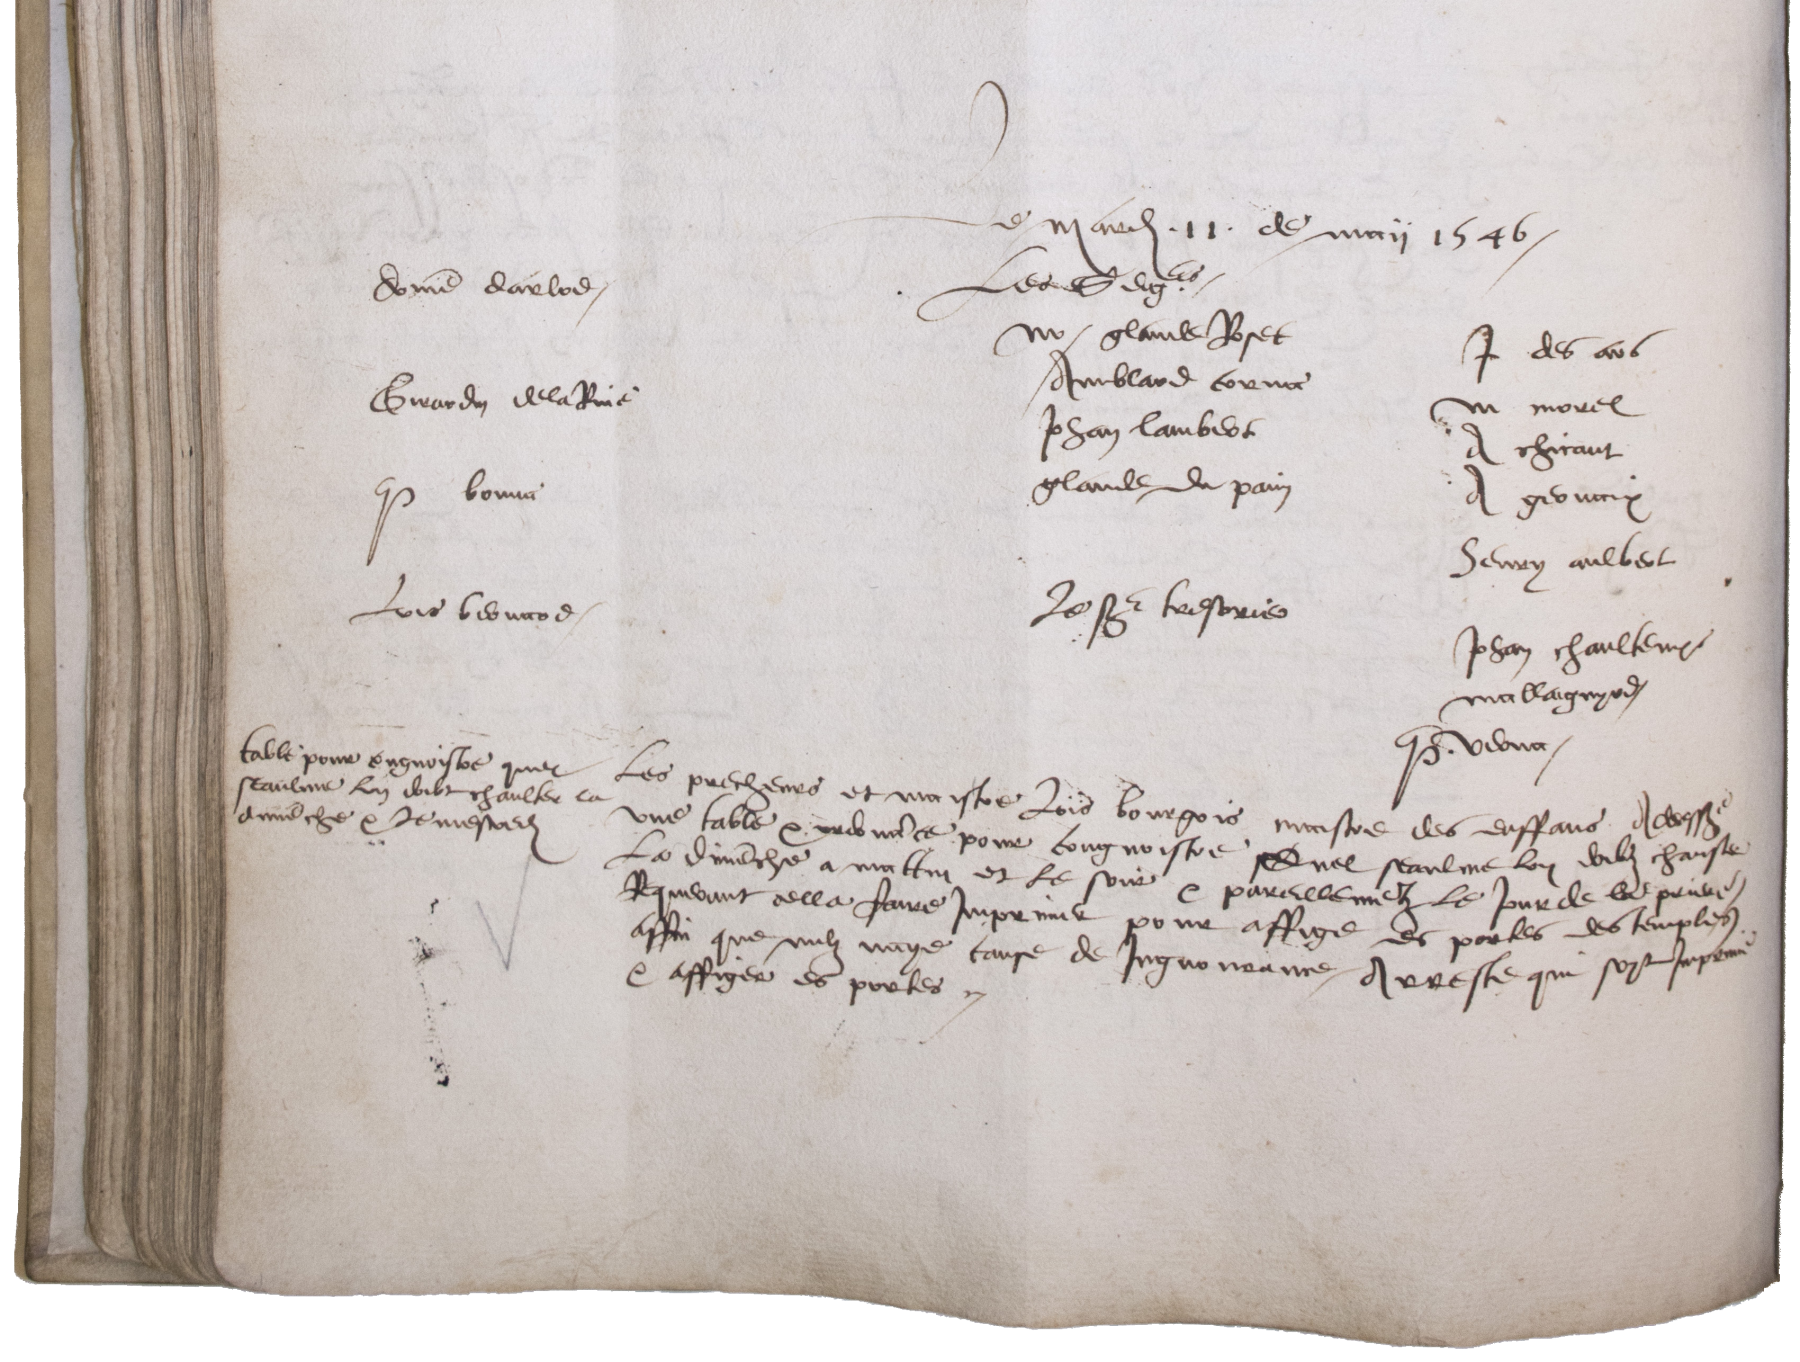 Décision du Conseil: « Table pour congnoistre quel seaulme l’on doibt chanter la dimenche et le mescredi » (11 mai 1546)